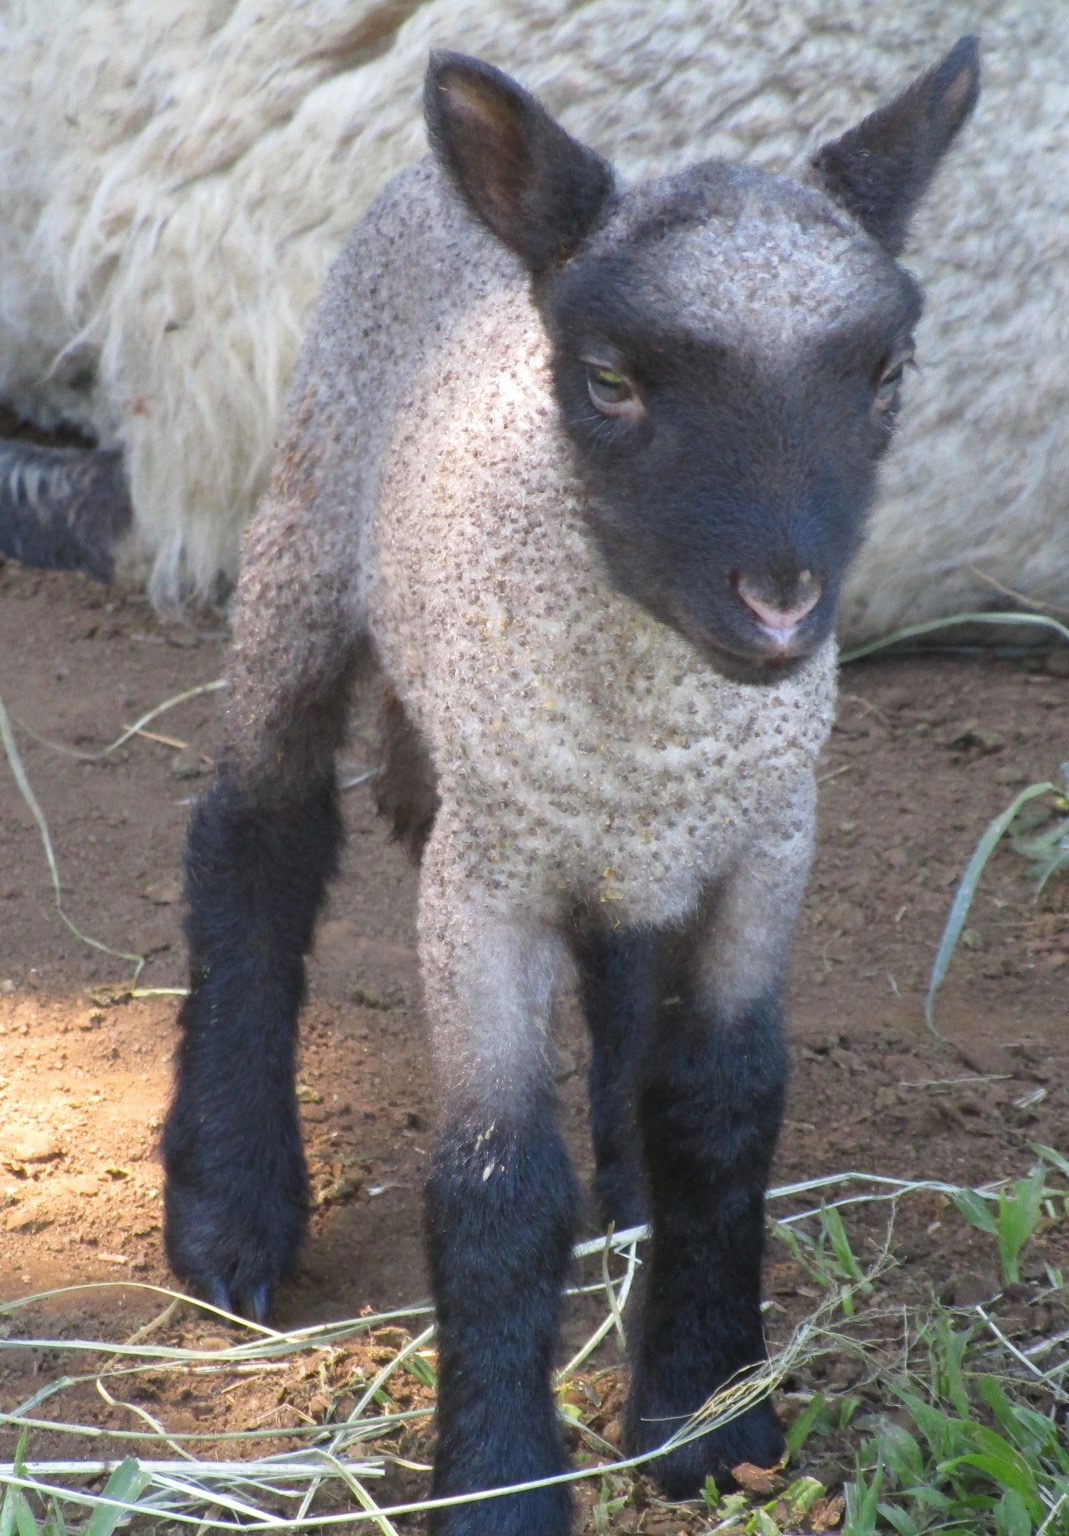 Ewe lamb#2